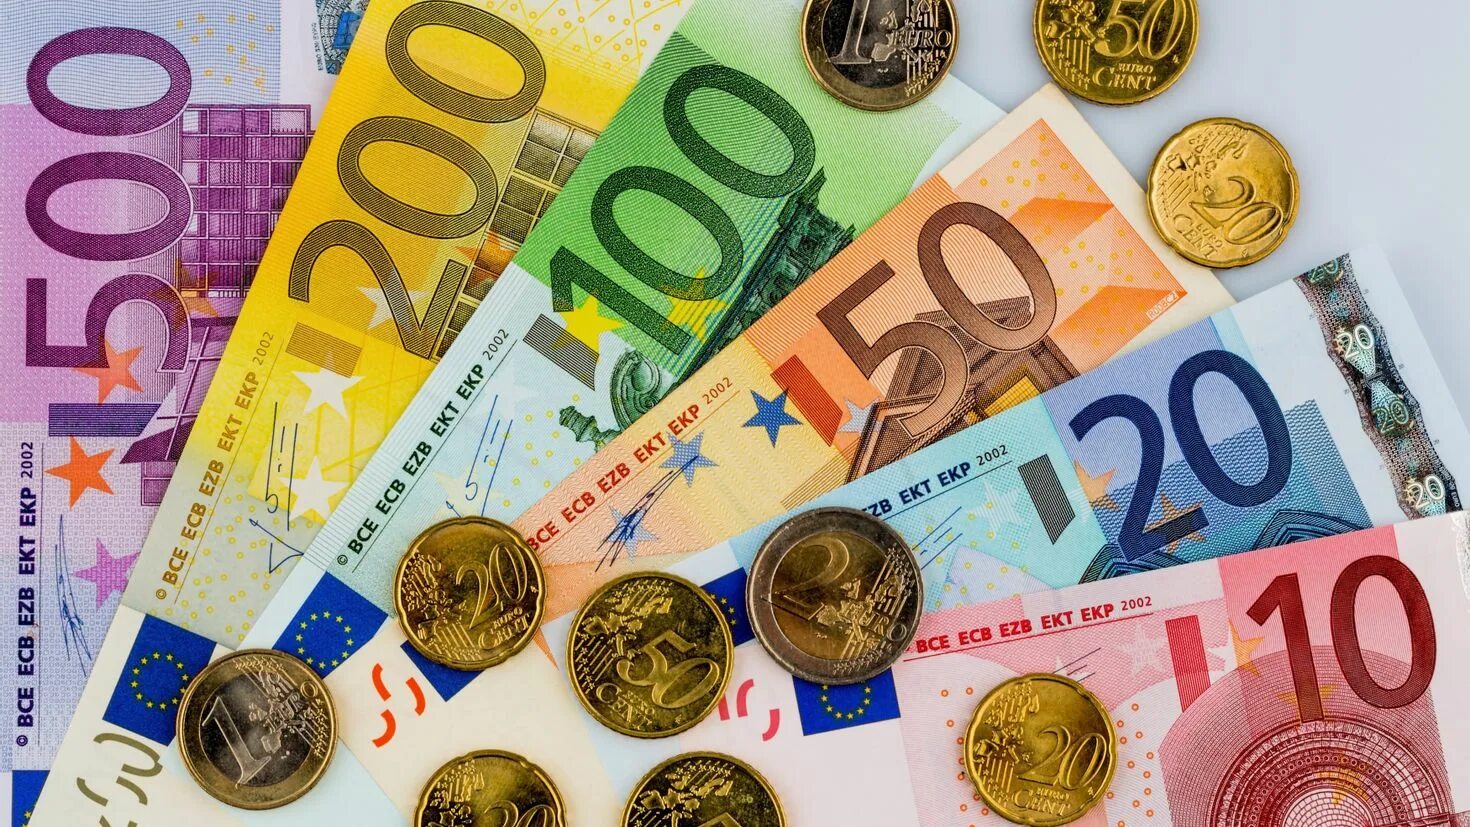 Деньги многих стран европы. Деньги евро. Евро валюта. Банкноты евро. Евро купюры и монеты.